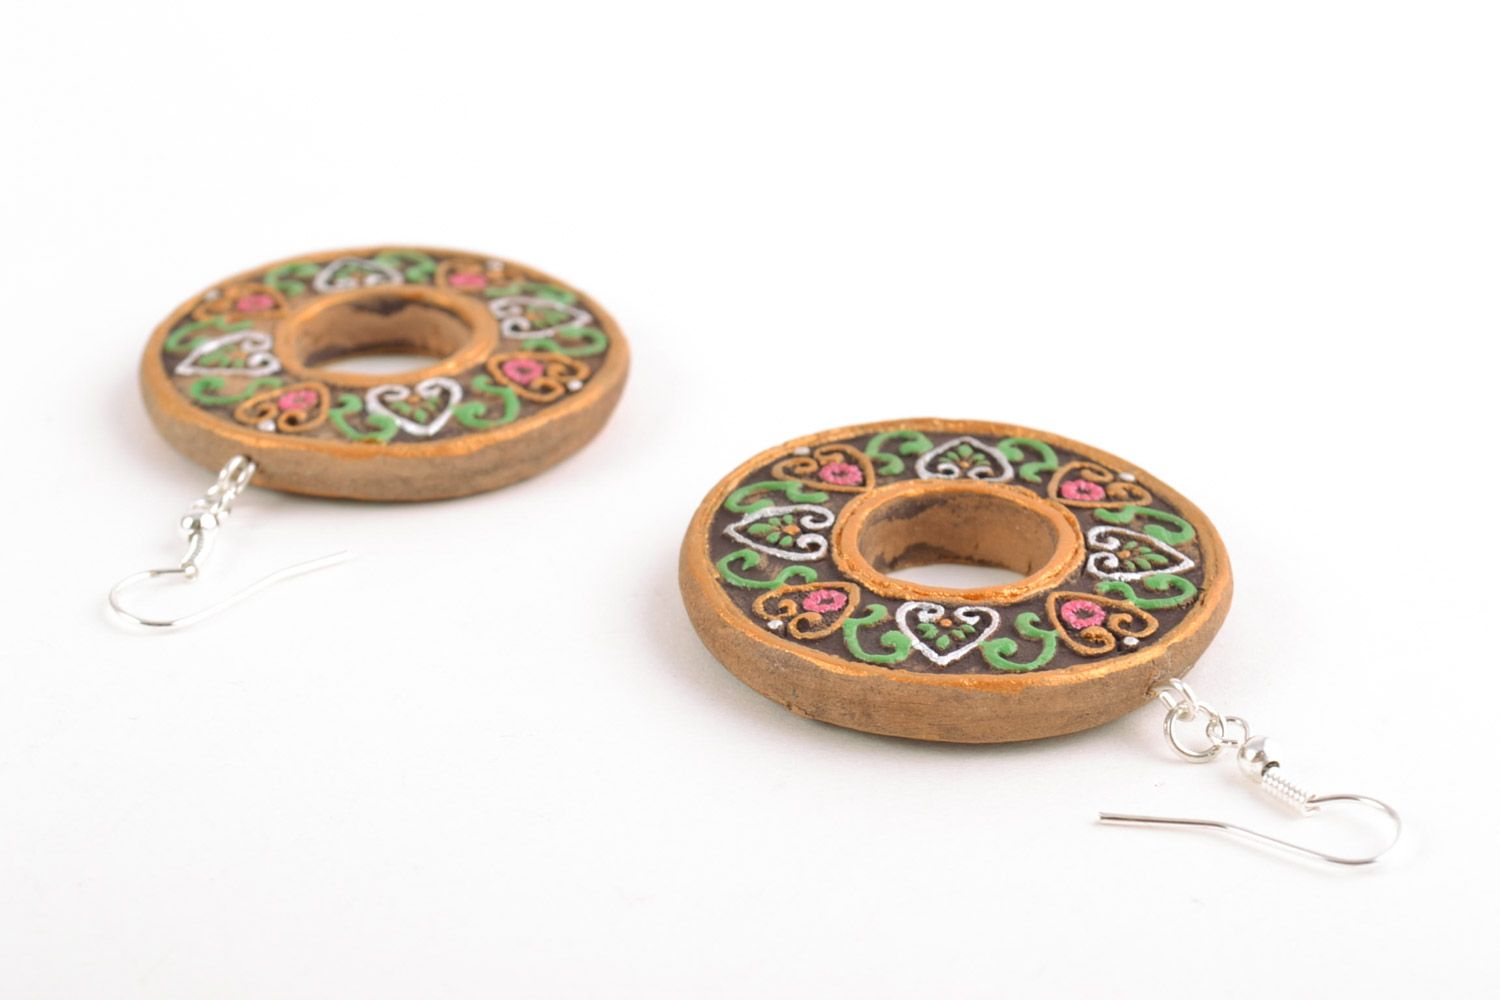 Глиняные серьги ручной работы круглой формы нарядные расписанные красками фото 4